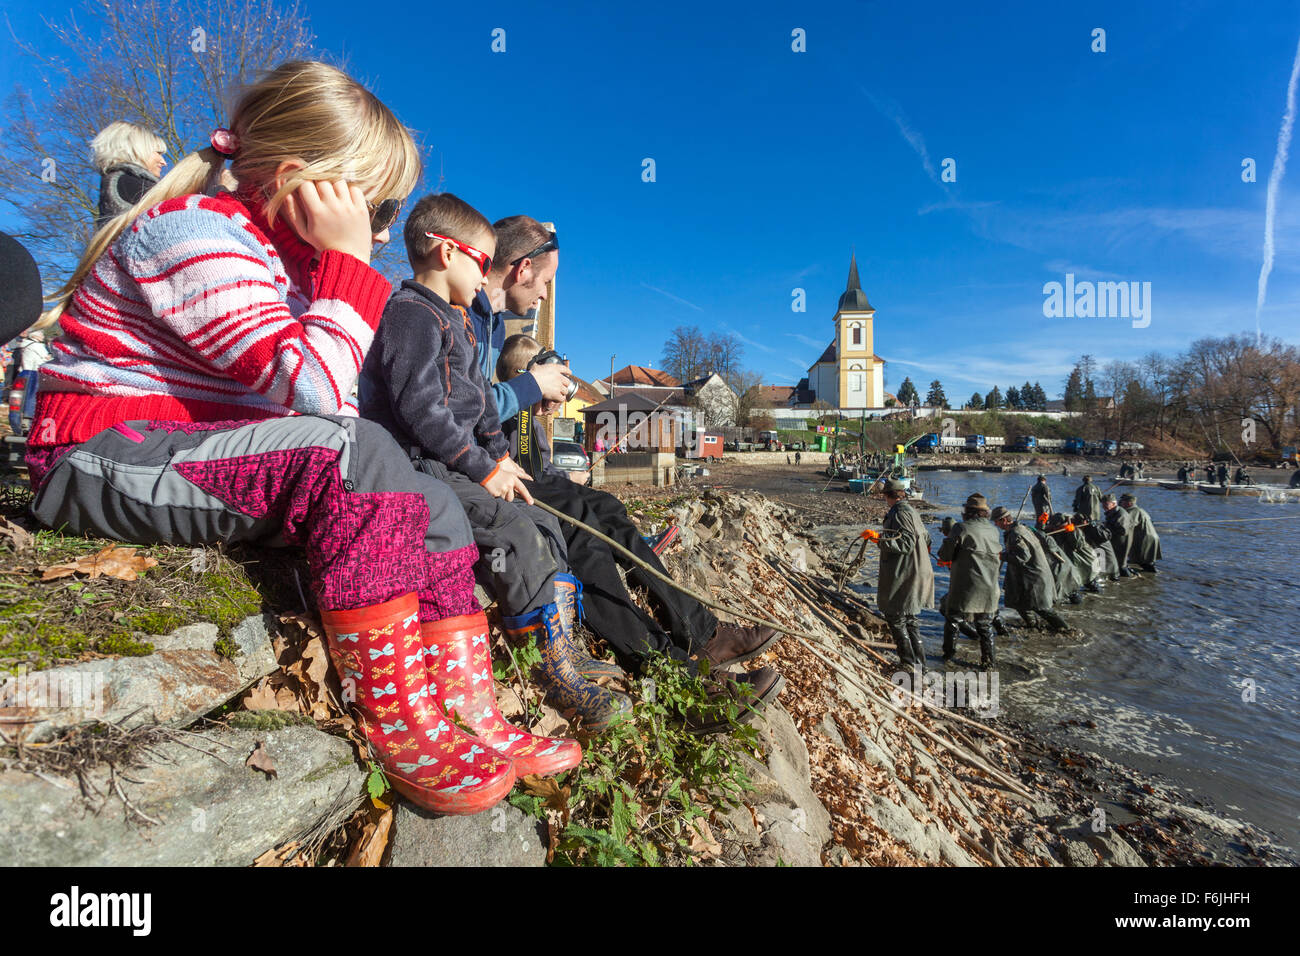 Les enfants sur la digue regarder les récoltes traditionnelles de l'étang des carpes tchèque. Bosilec La Bohême du Sud, République Tchèque Banque D'Images